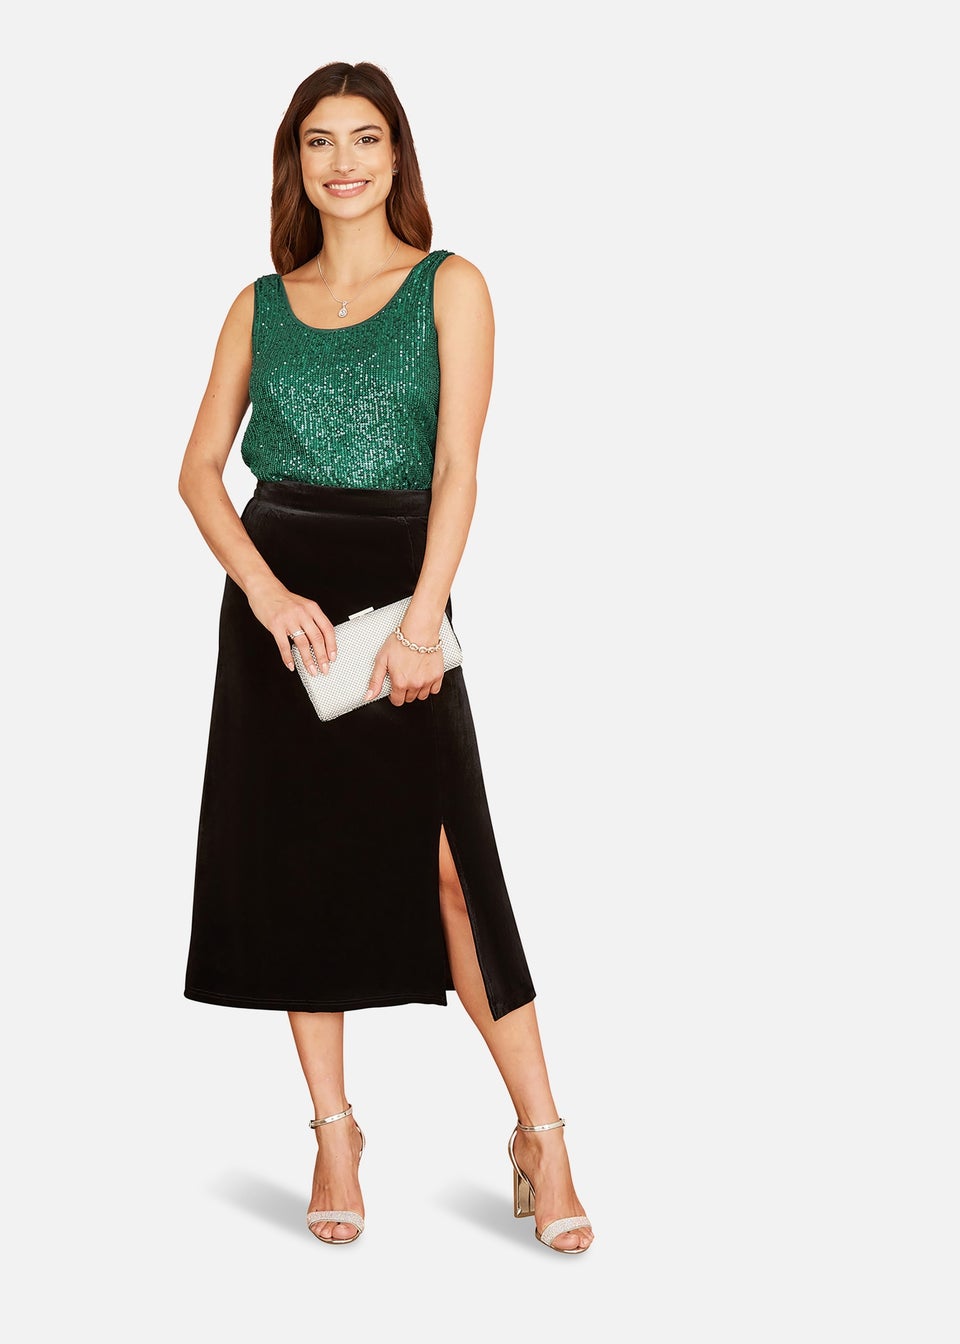 Yumi Black Velvet Skirt With Front Slit